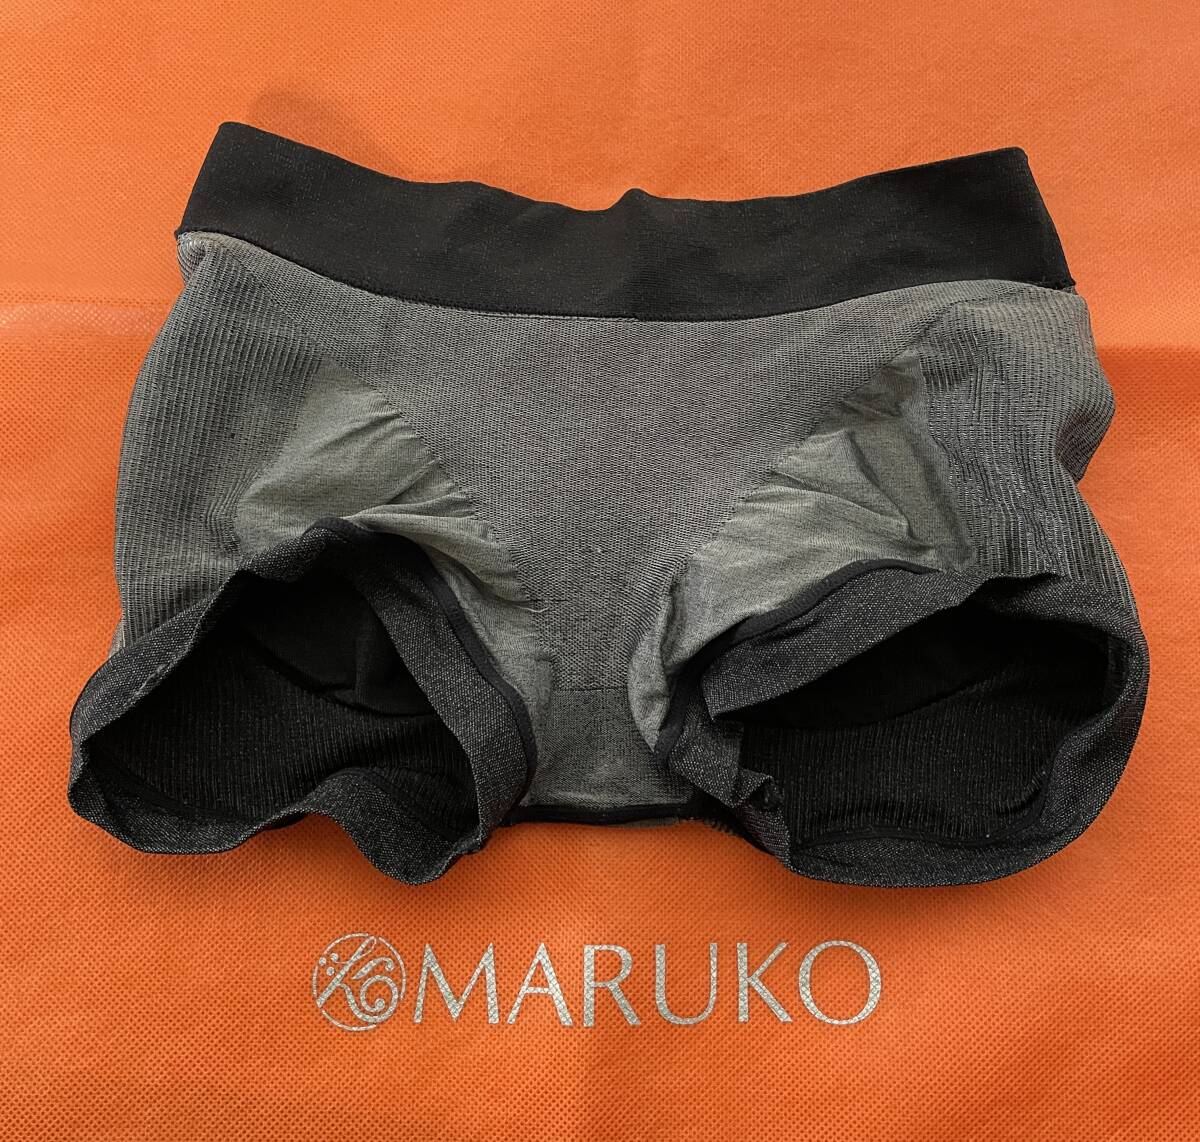 マルコ MARUKO ショーツ ソフトガードル Sサイズ 黒 補正下着 ホームクリーニング済みの画像3